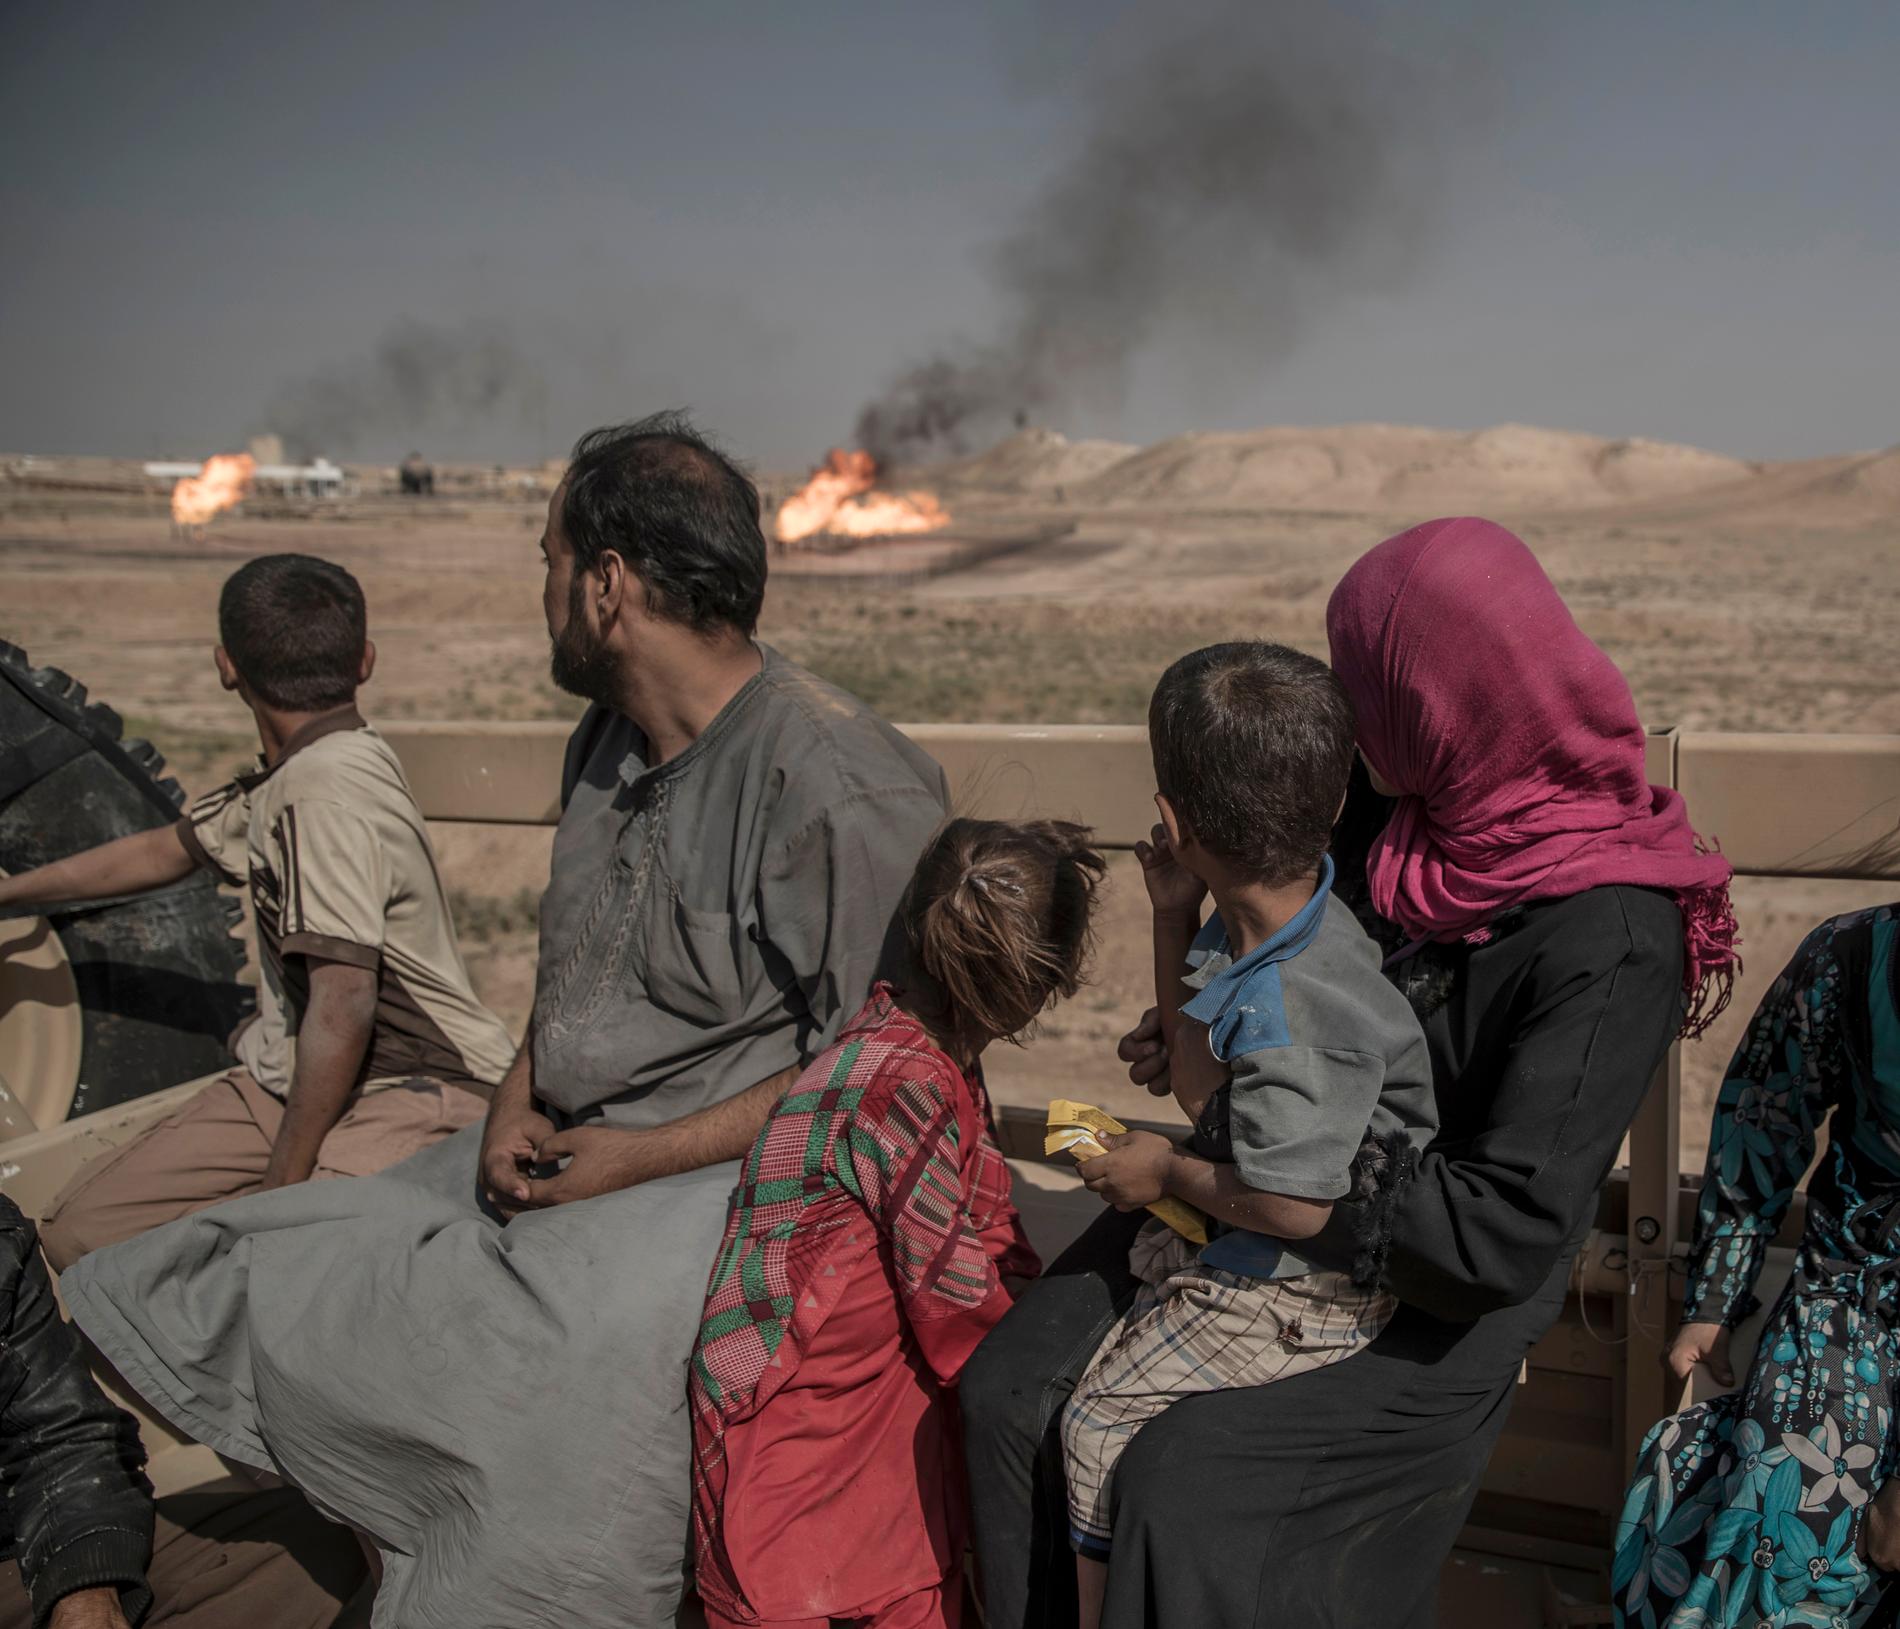 Årets fotograf 2017, Magnus Wennman. I bergen utanför Mosul transporteras en grupp med åtta barn och fyra vuxna som flytt en IS-kontrollerad by mot ett flyktingläger. De har vandrat genom öknen i tre dagar för att nå säkerheten. Flera av barnen saknar skor på fötterna.